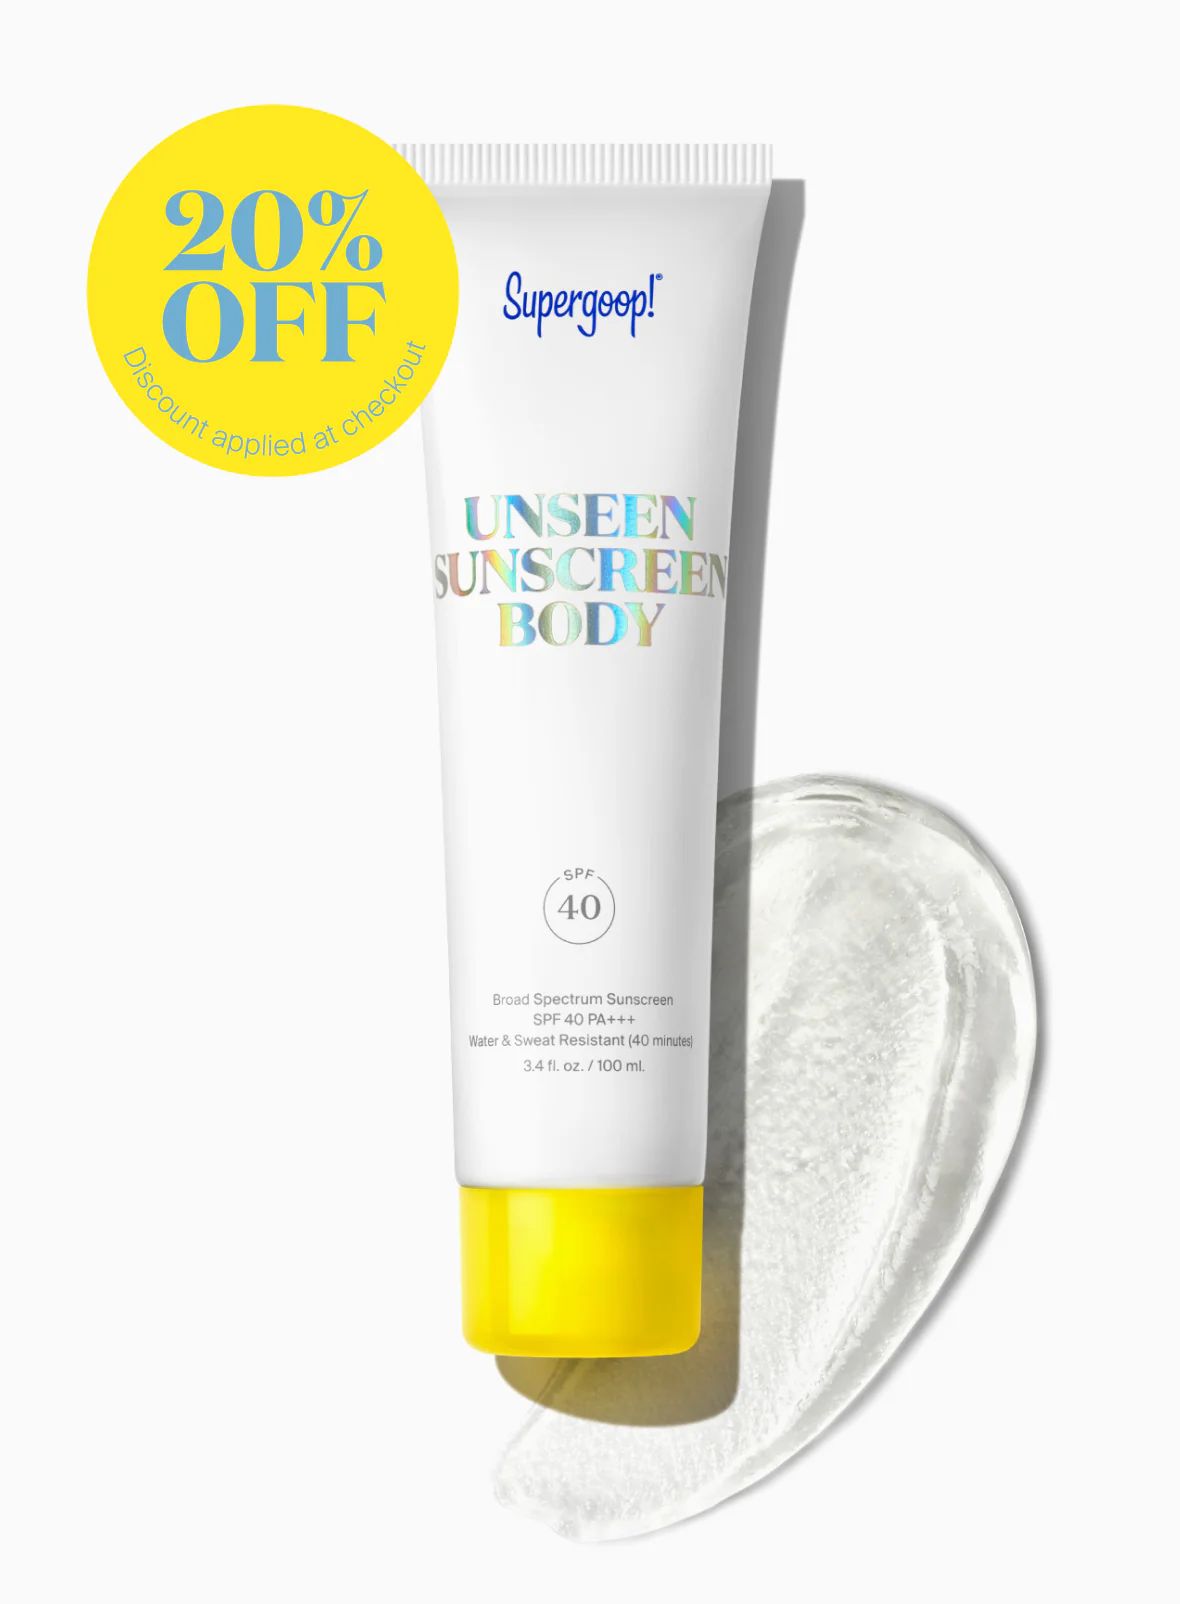 Unseen Sunscreen Body SPF 40 | Supergoop